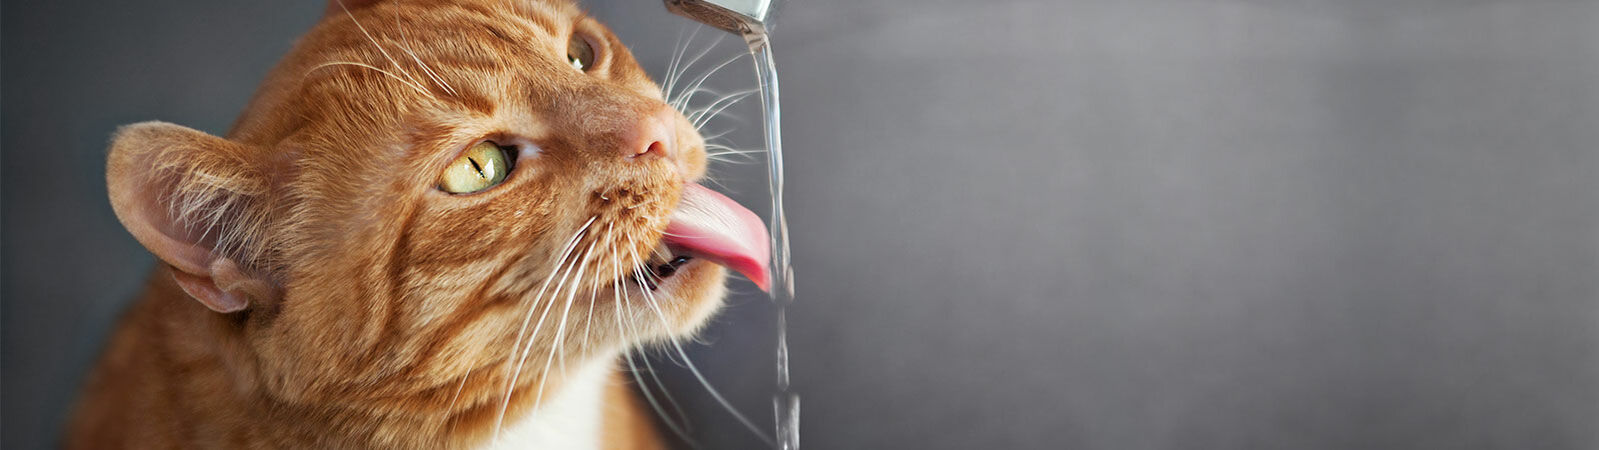 Eine Katze streckt ihren hals nach dem Wasserhahn aus und fängt ein paar Tropfen mit der Zunge auf.